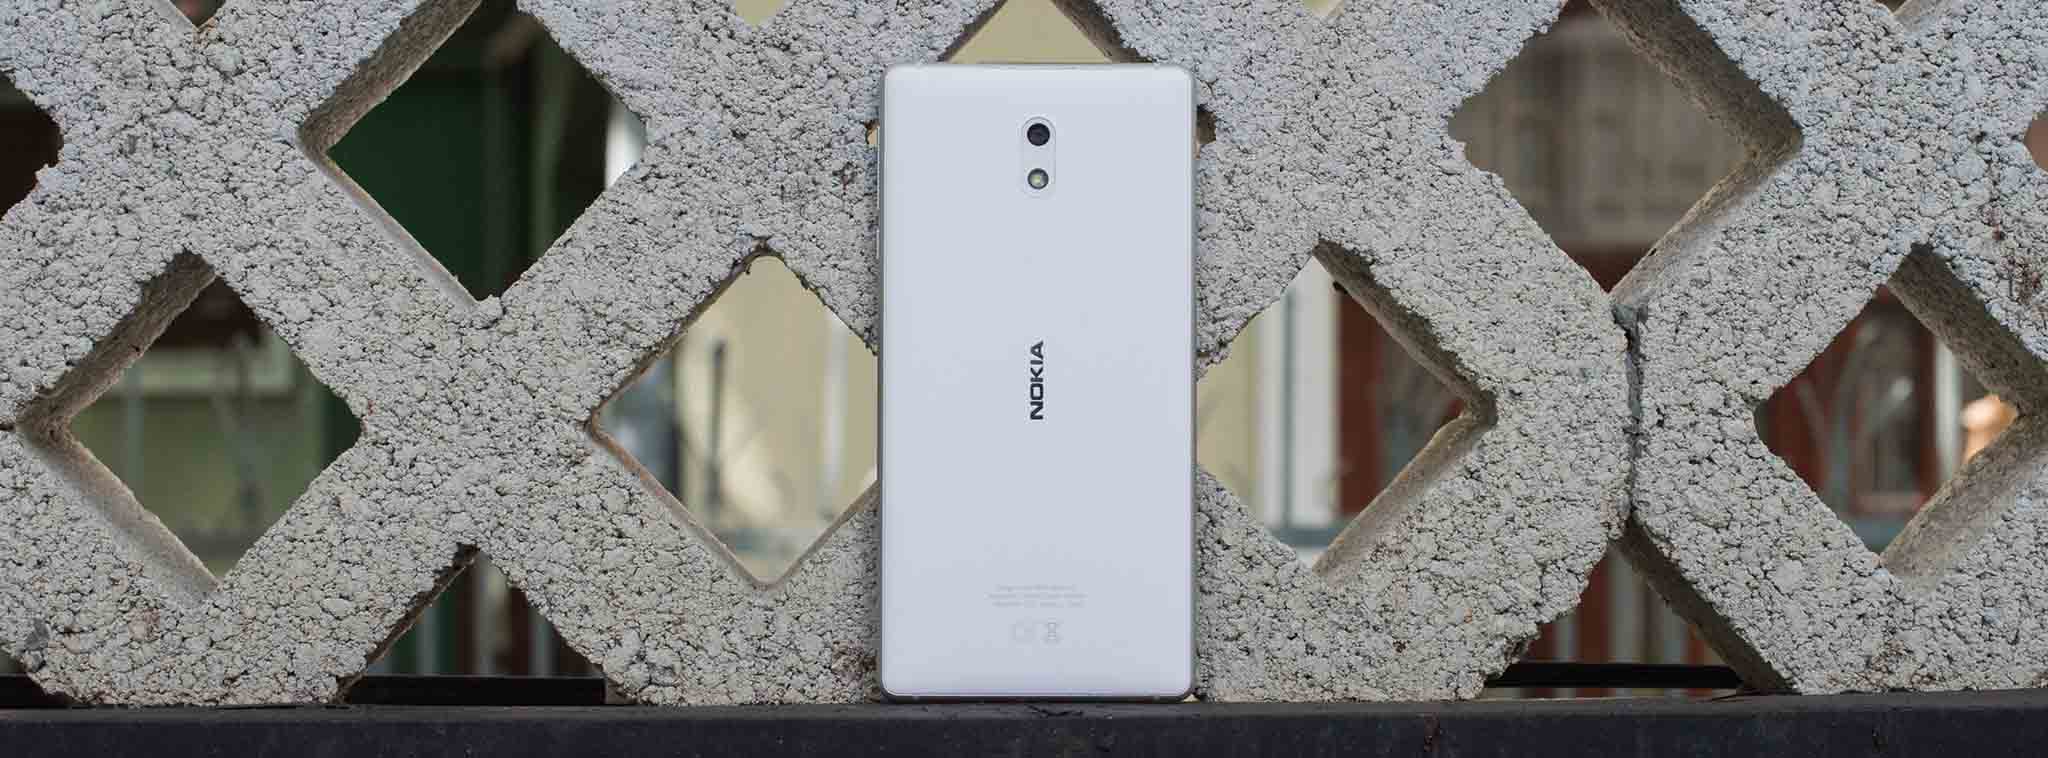 Điện thoại Nokia sẽ được cập nhật Android mới nhất tối thiểu 1.5 năm, Nokia 3 lên 7.1 cuối tháng 8